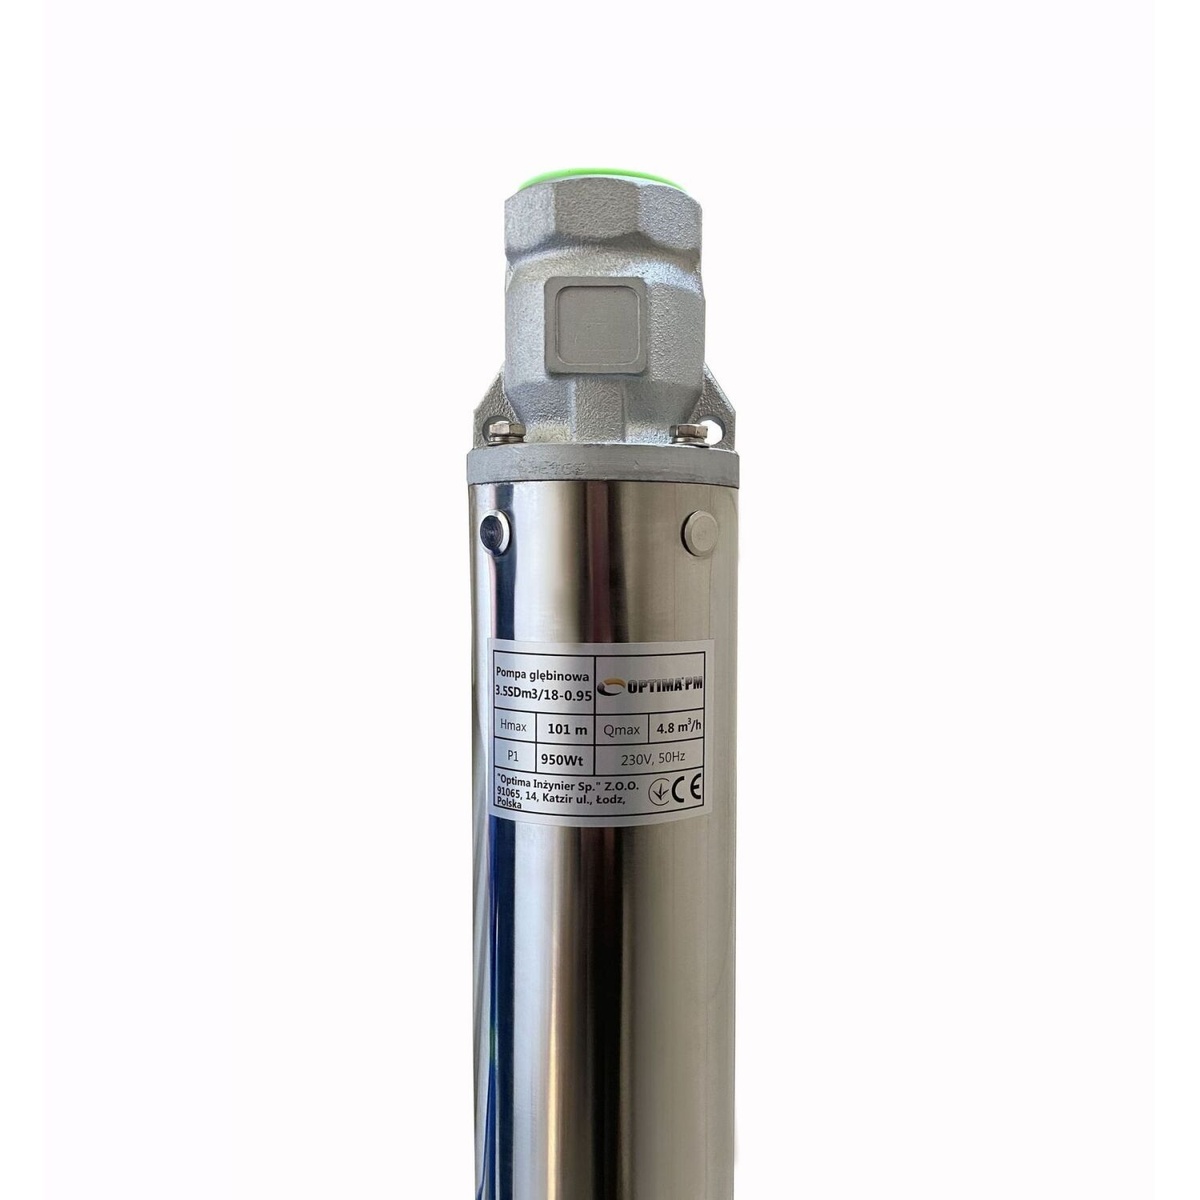 Насос скважинный OPTIMA центробежный многоступенчатый PM 3,5SDm3/18 950Вт Hmax 101м 4.8м³/ч Ø87мм с серединным забором воды 000019678